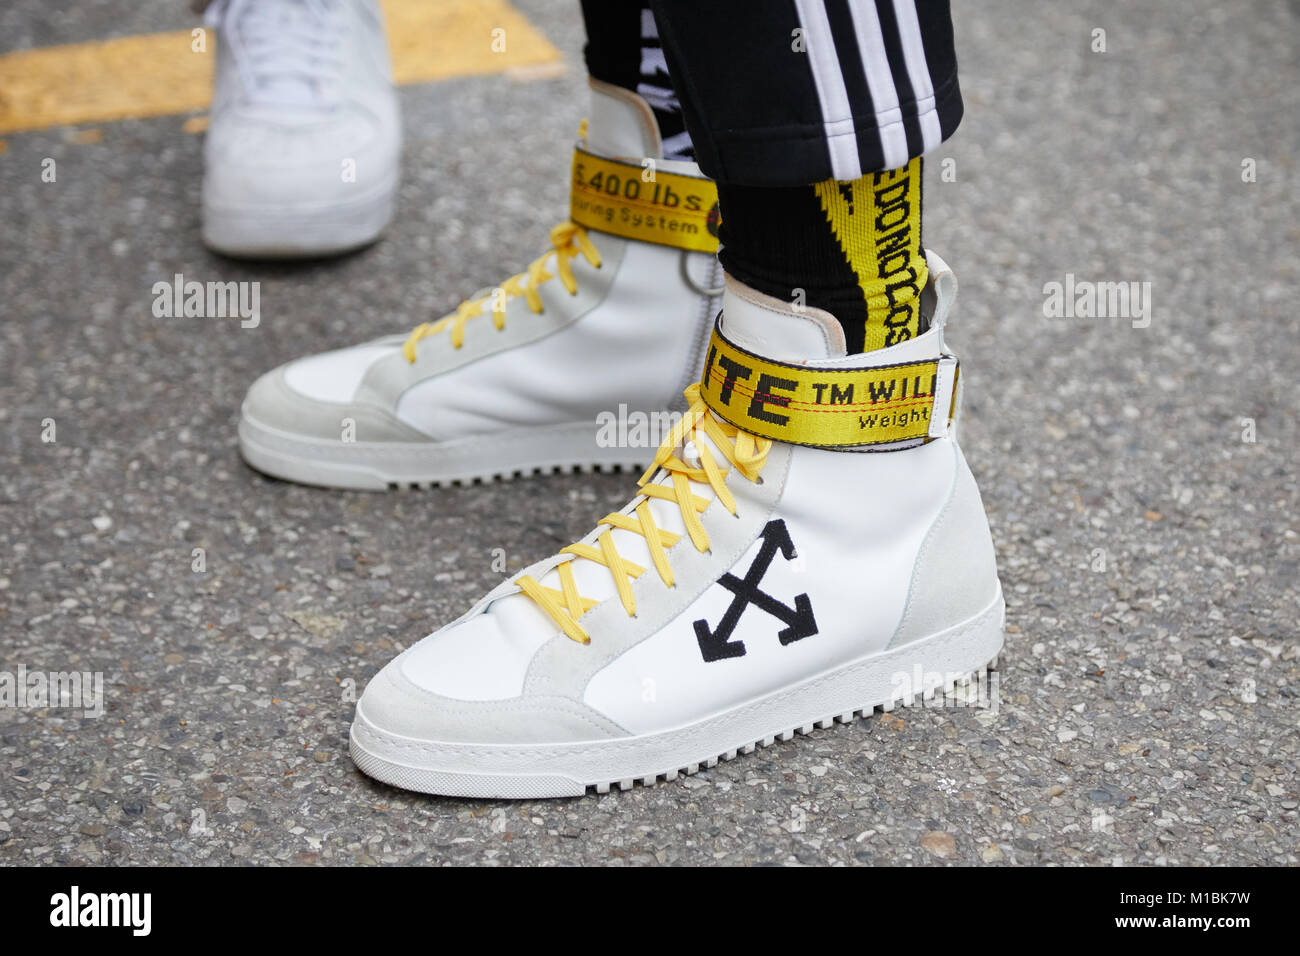 Milano - 15 gennaio: Uomo con bianco sneakers con nastro giallo prima di rappresentare la sfilata di moda, la Settimana della Moda Milanese street style on gennaio 15, 2018 in Foto Stock